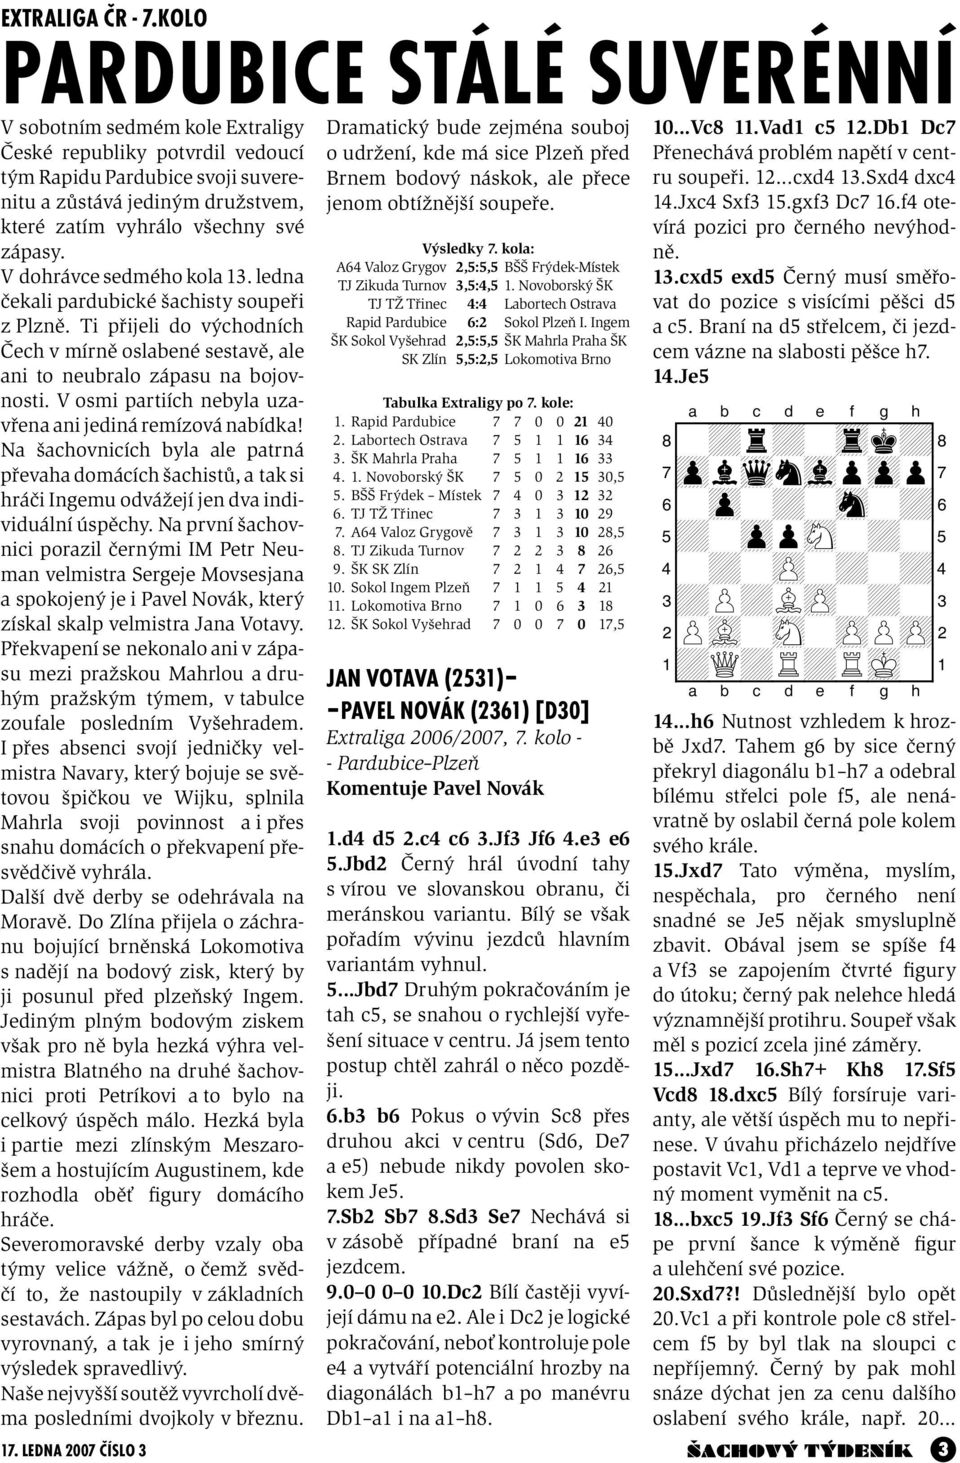 udržení, kde má sice Plzeň před Brnem bodový náskok, ale přece jenom obtížnější soupeře. 10...Vc8 11.Vad1 c5 12.Db1 Dc7 Přenechává problém napětí v centru soupeři. 12...cxd4 13.Sxd4 dxc4 14.